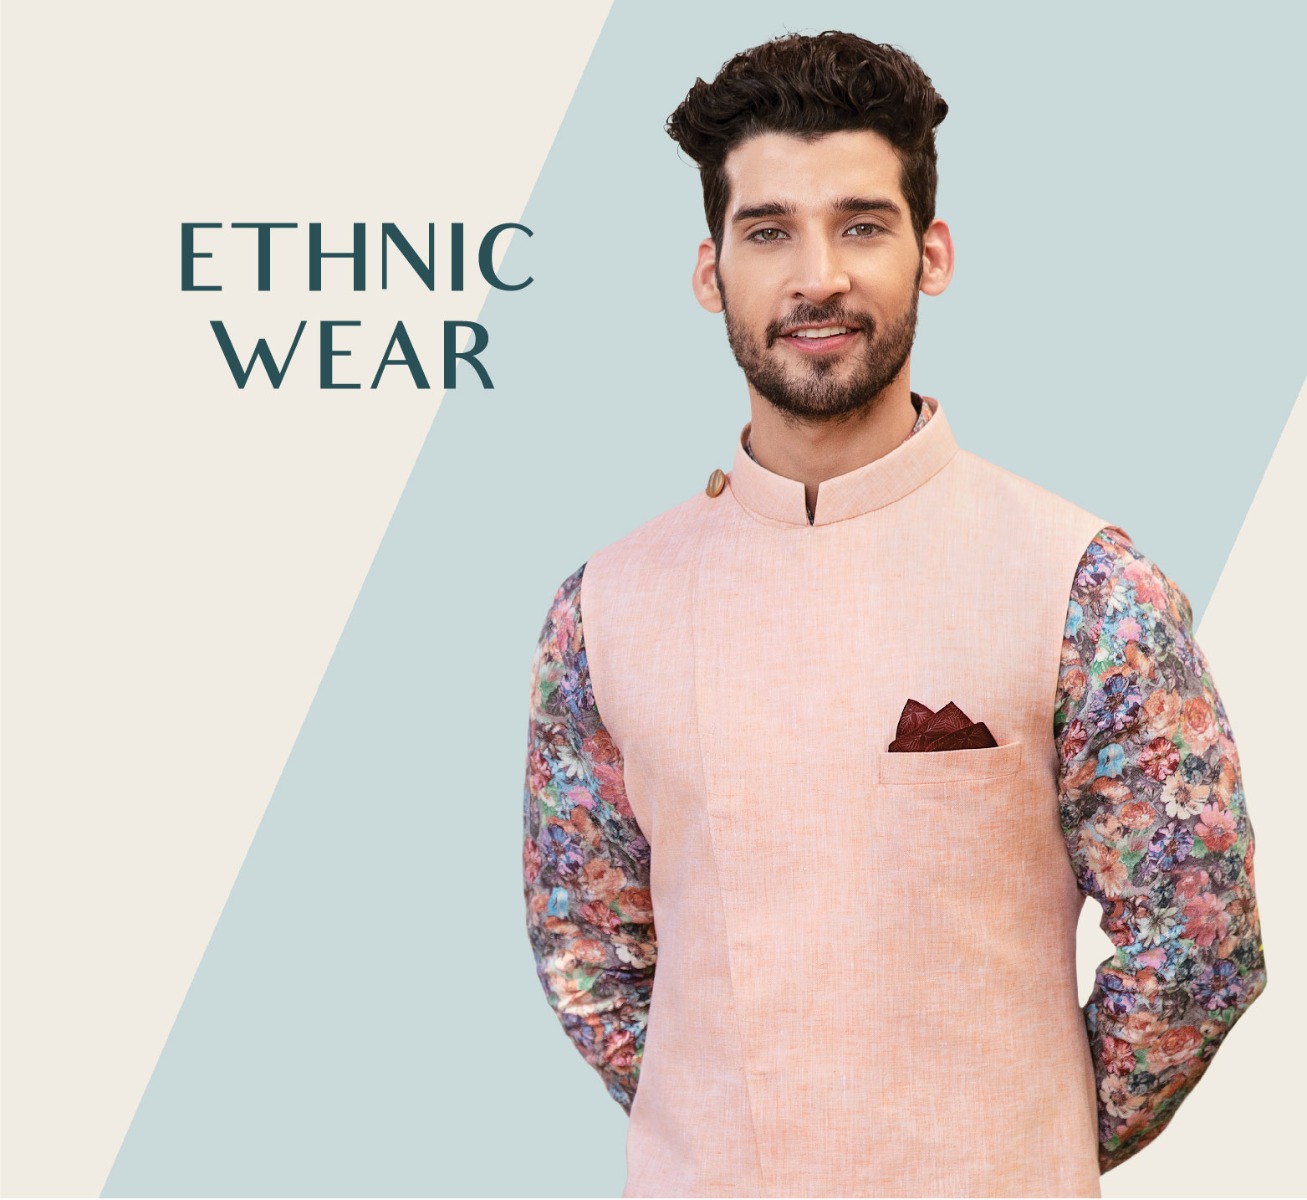 Off White & Golden Zari Yoke Cut Dress - Byhand I Indian Ethnic Wear Online  I Sustainable Fashion I Handmade Clothes